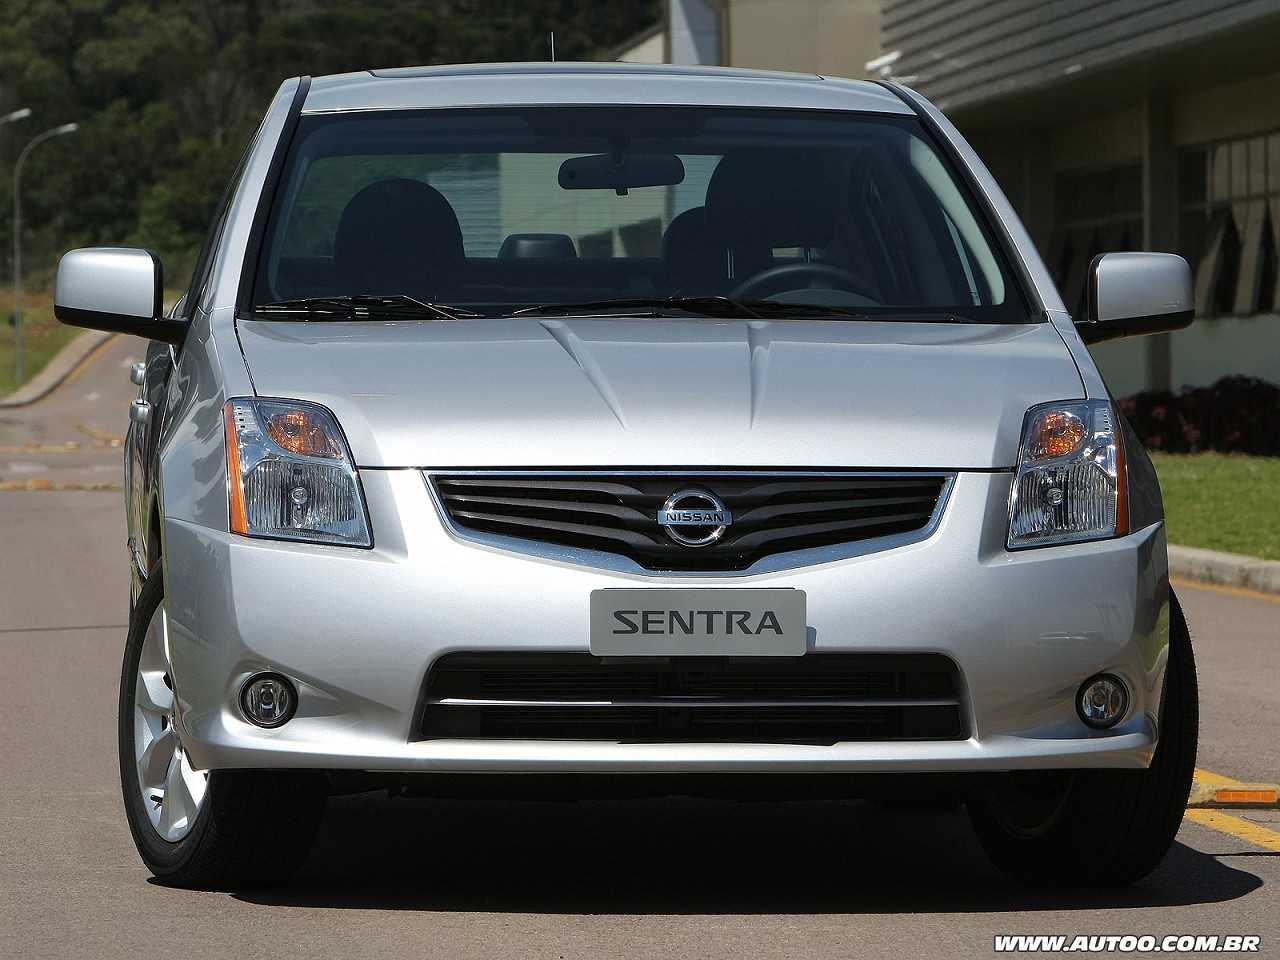 Devo comprar um Nissan Sentra 2009 manual?